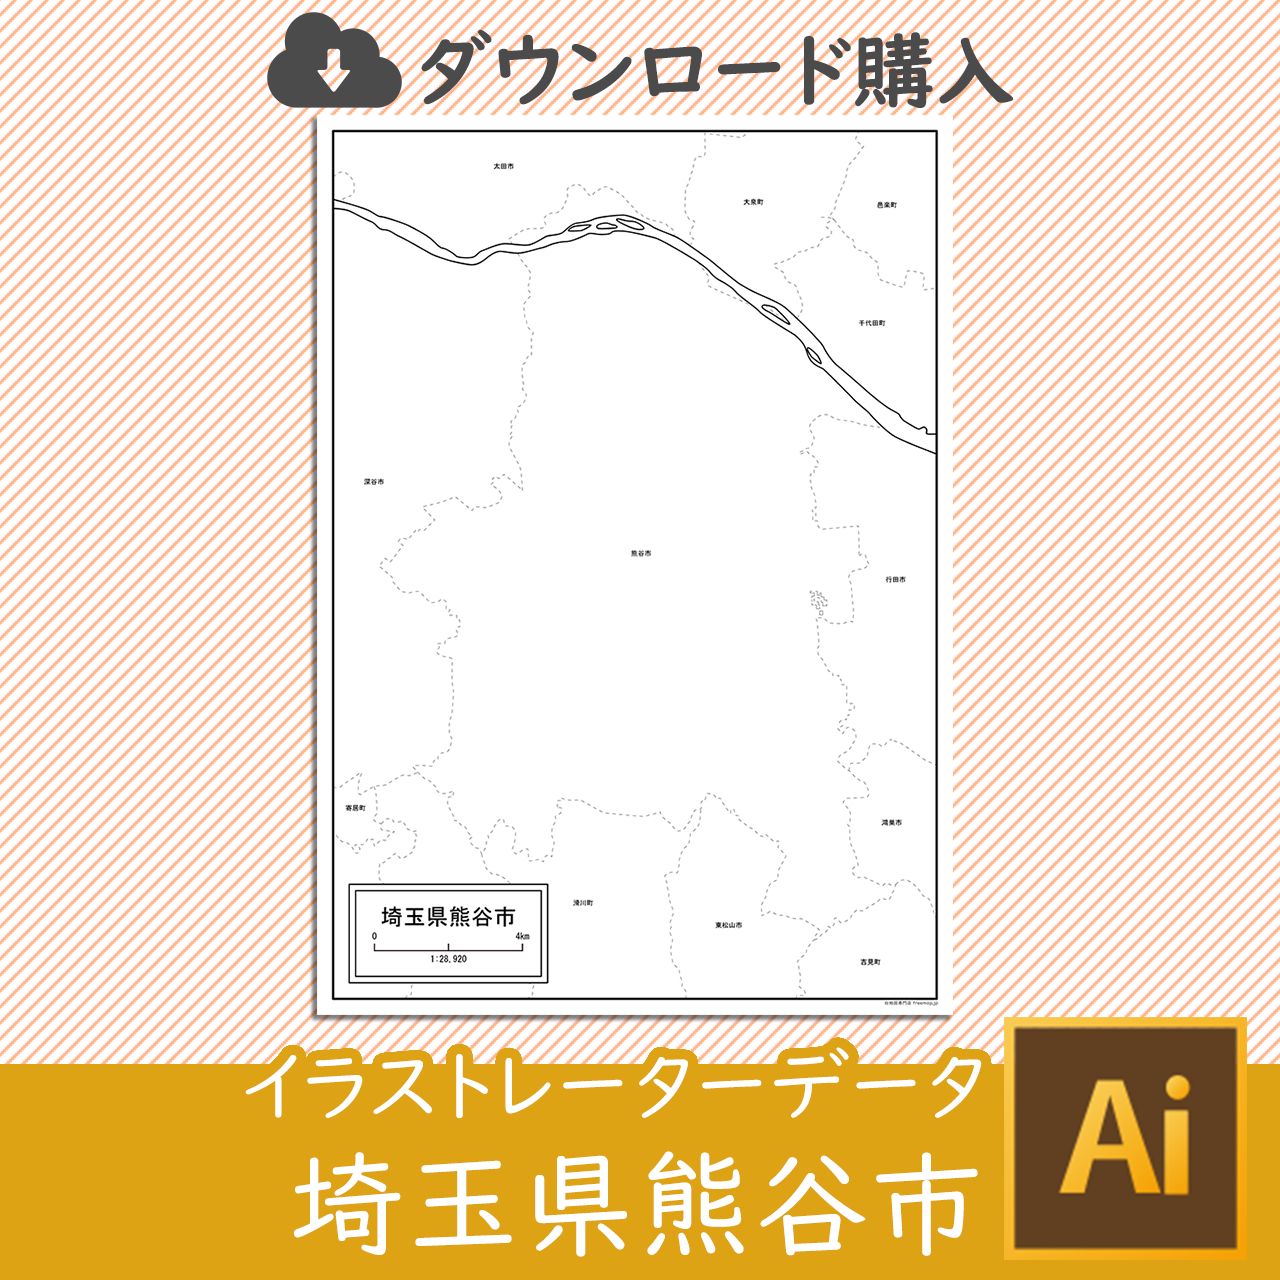 熊谷市のaiデータのサムネイル画像